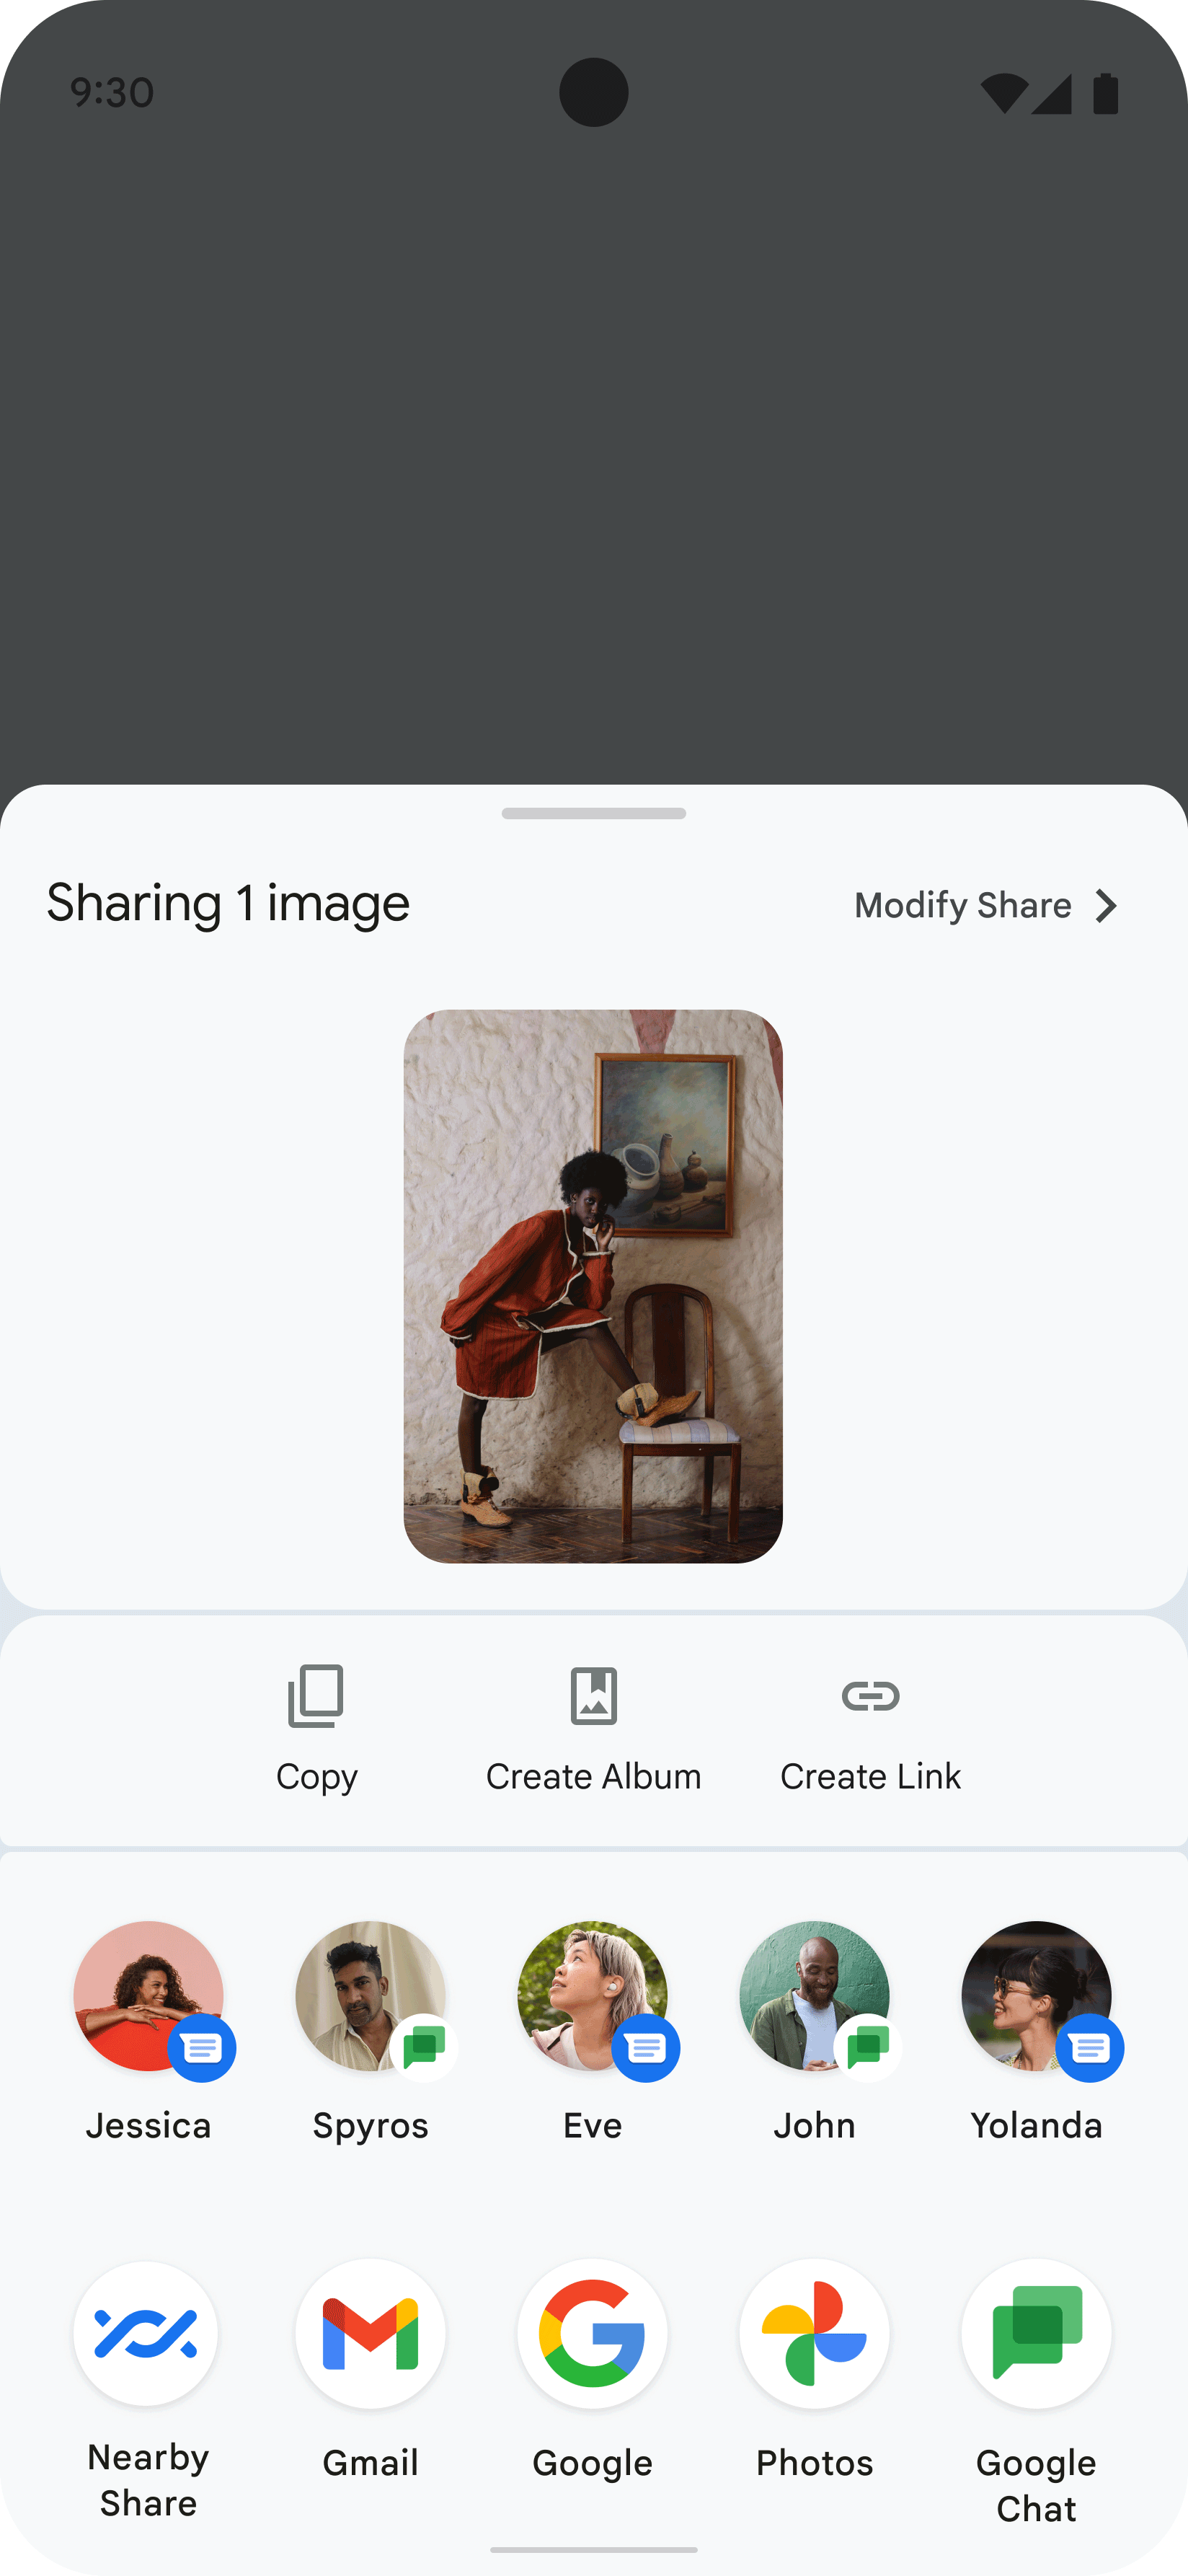 此图片显示了应用上显示的 Sharesheet，即用户分享了某个人的图片的结果。Sharesheet 显示多个图标，代表可能要与哪些联系人和应用分享图片。